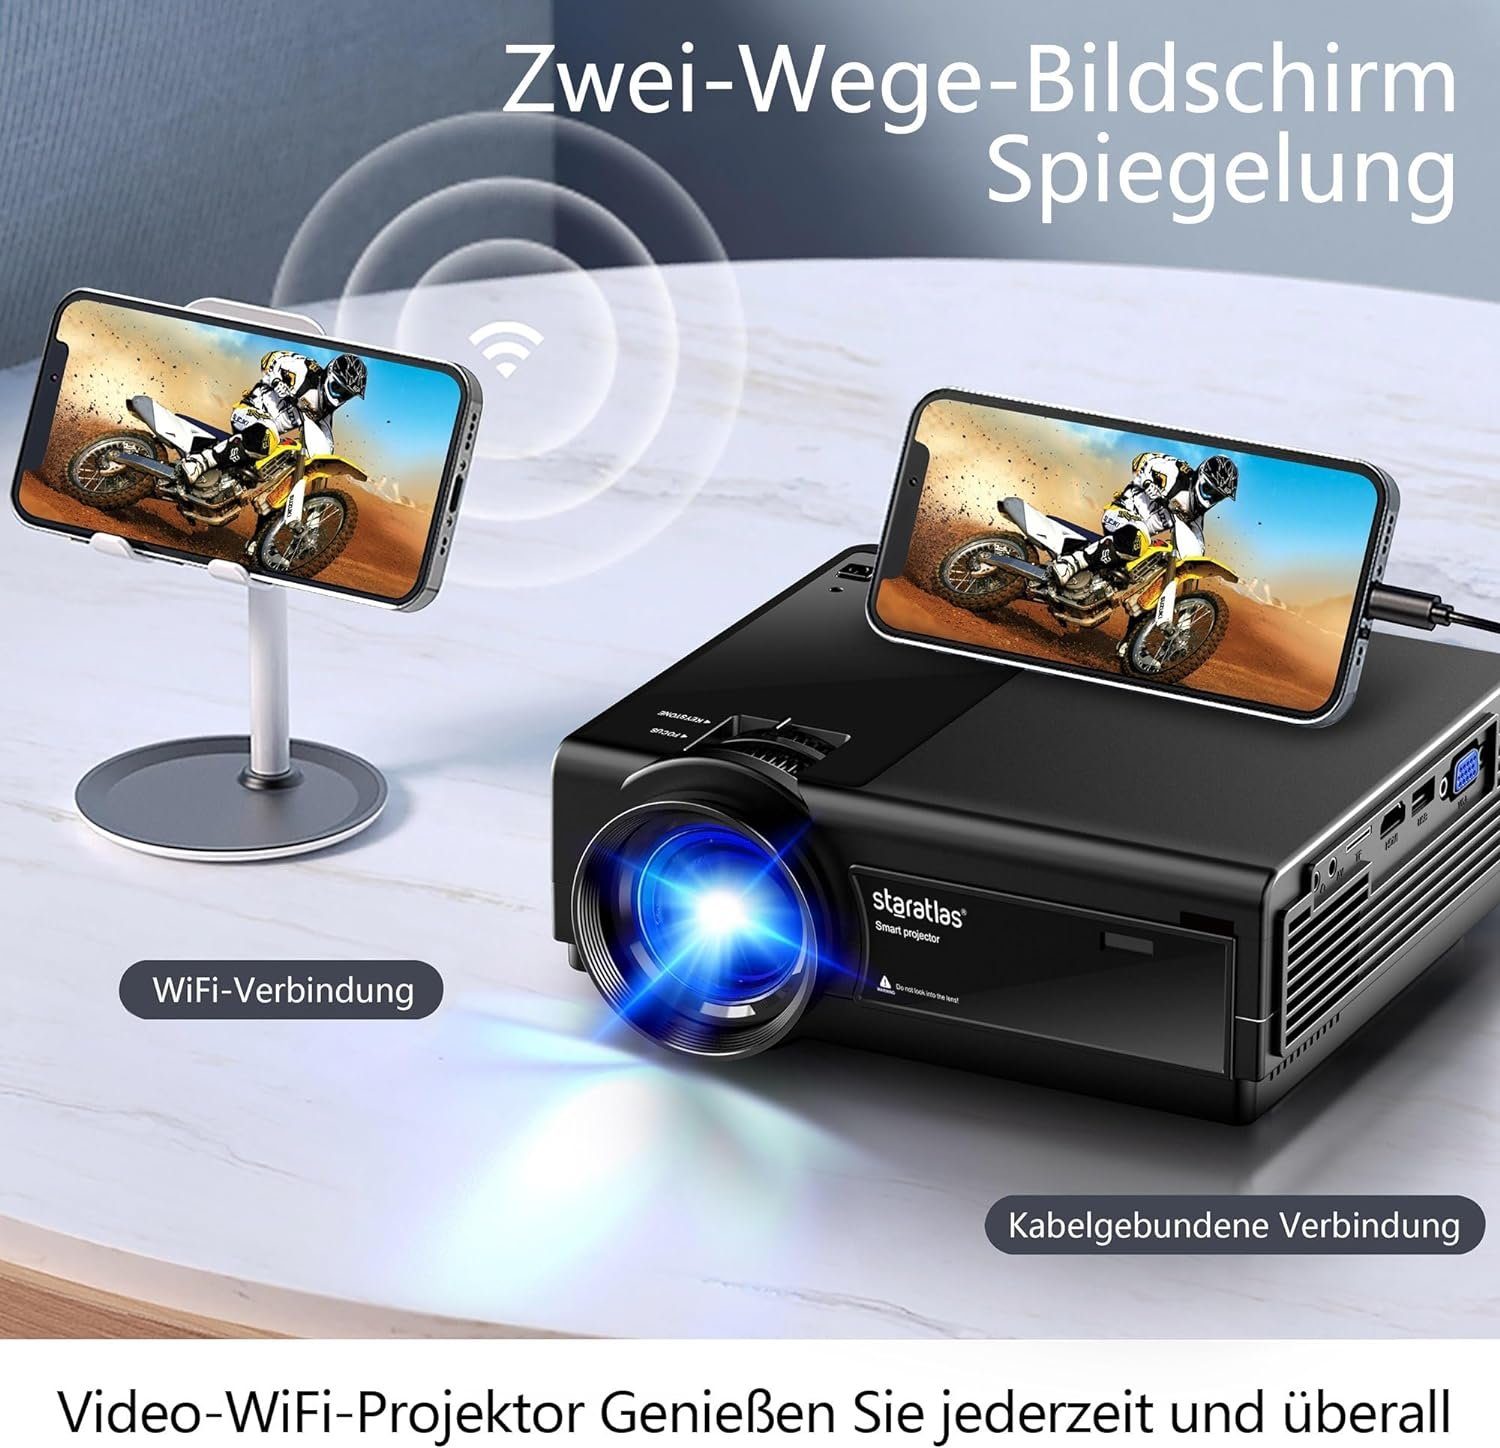 iOS-kompatibel Beamer WiFi/Bluetooth Heimkino px, tragbar FHD 1080 x 1920 staratlas Kurzdinstanzprojektor HDMI/USB/VGA) (10000:1,